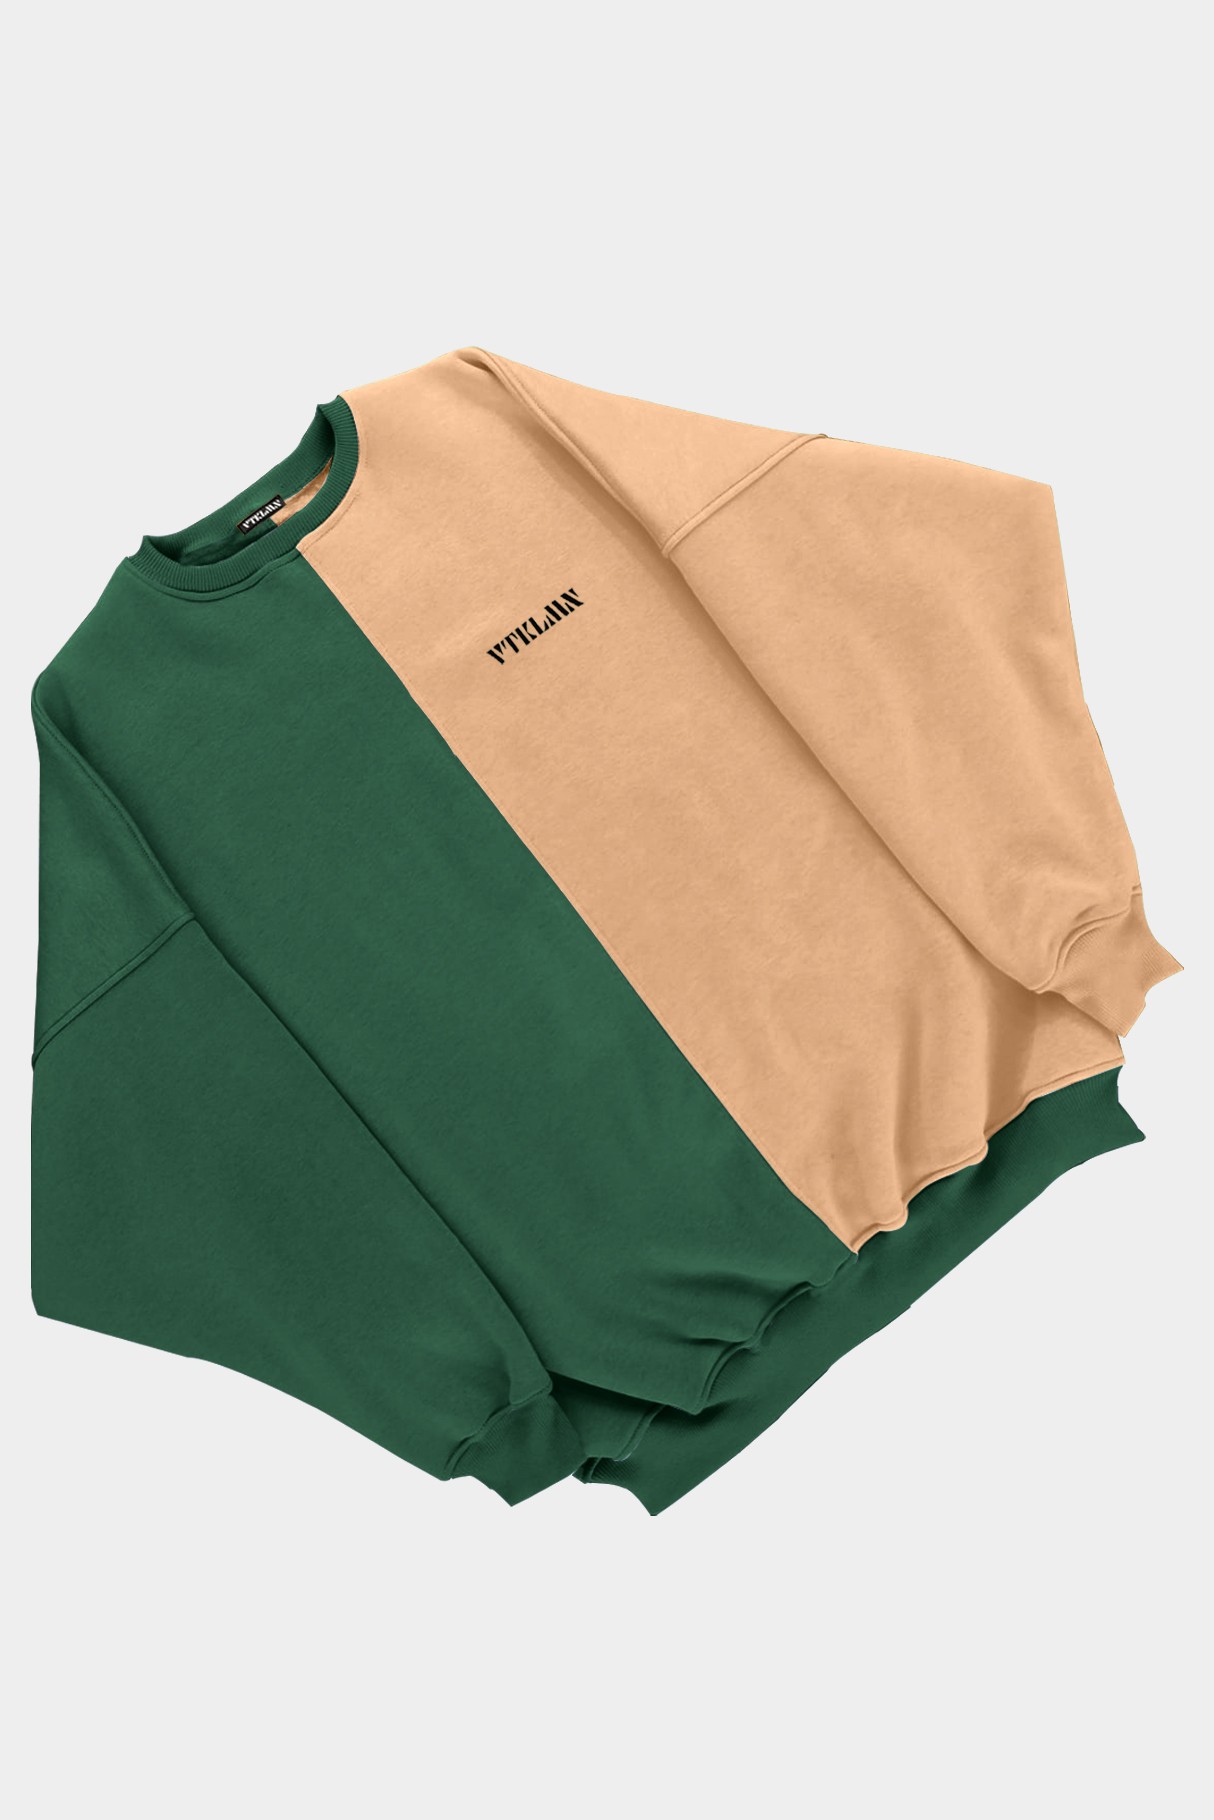  Kadın Erkek Renkli Sweatshirt - Koyu Yeşil Kahverengi